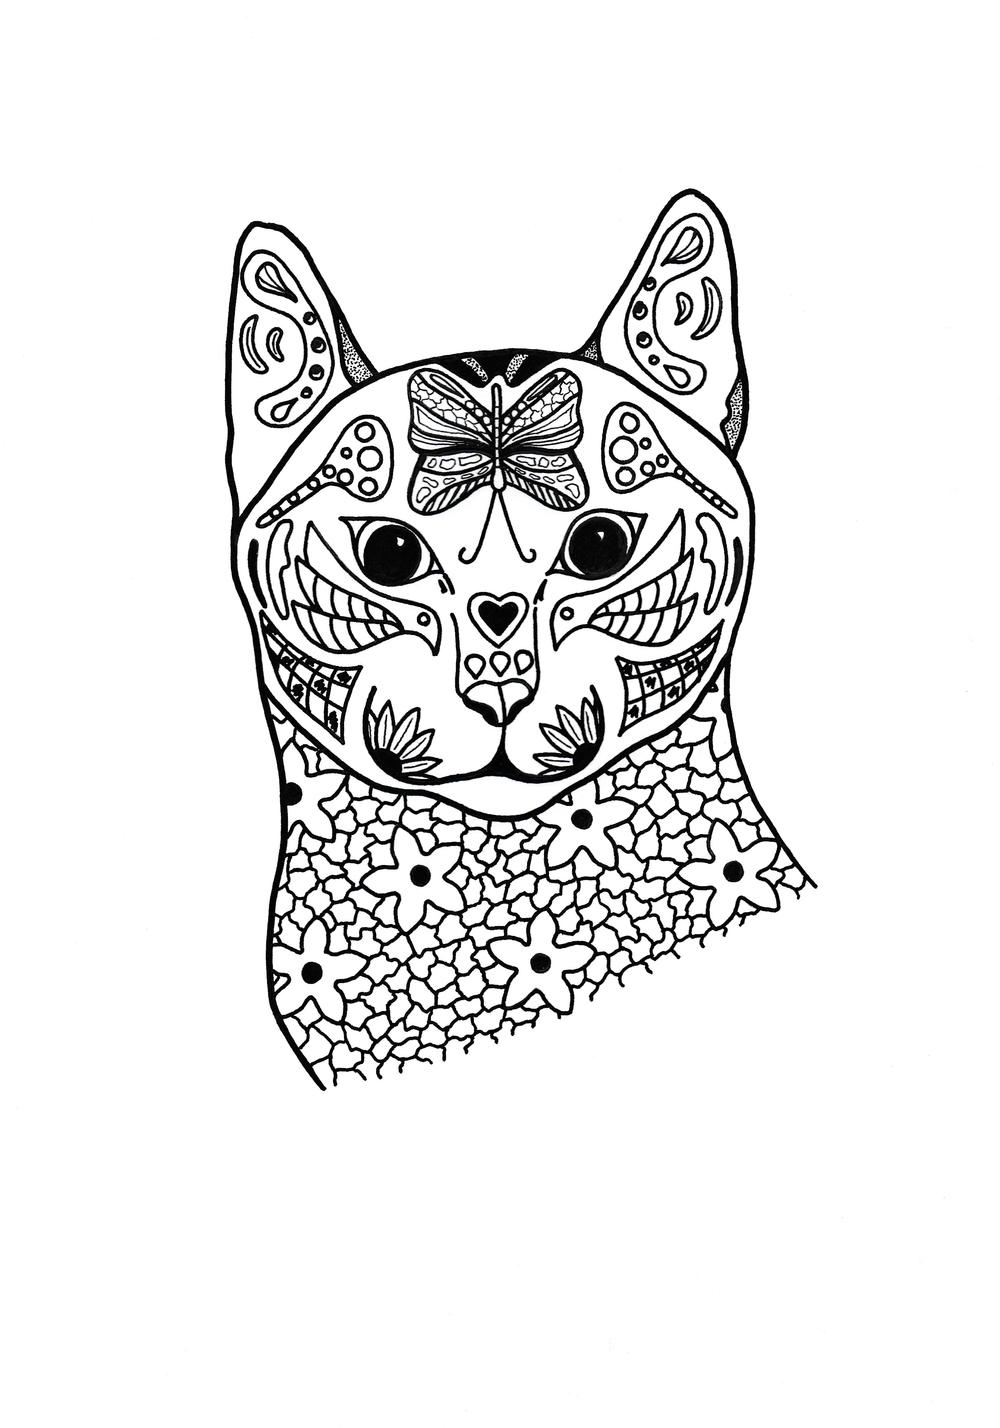 Springtime Cat Coloring Page | FaveCrafts.com